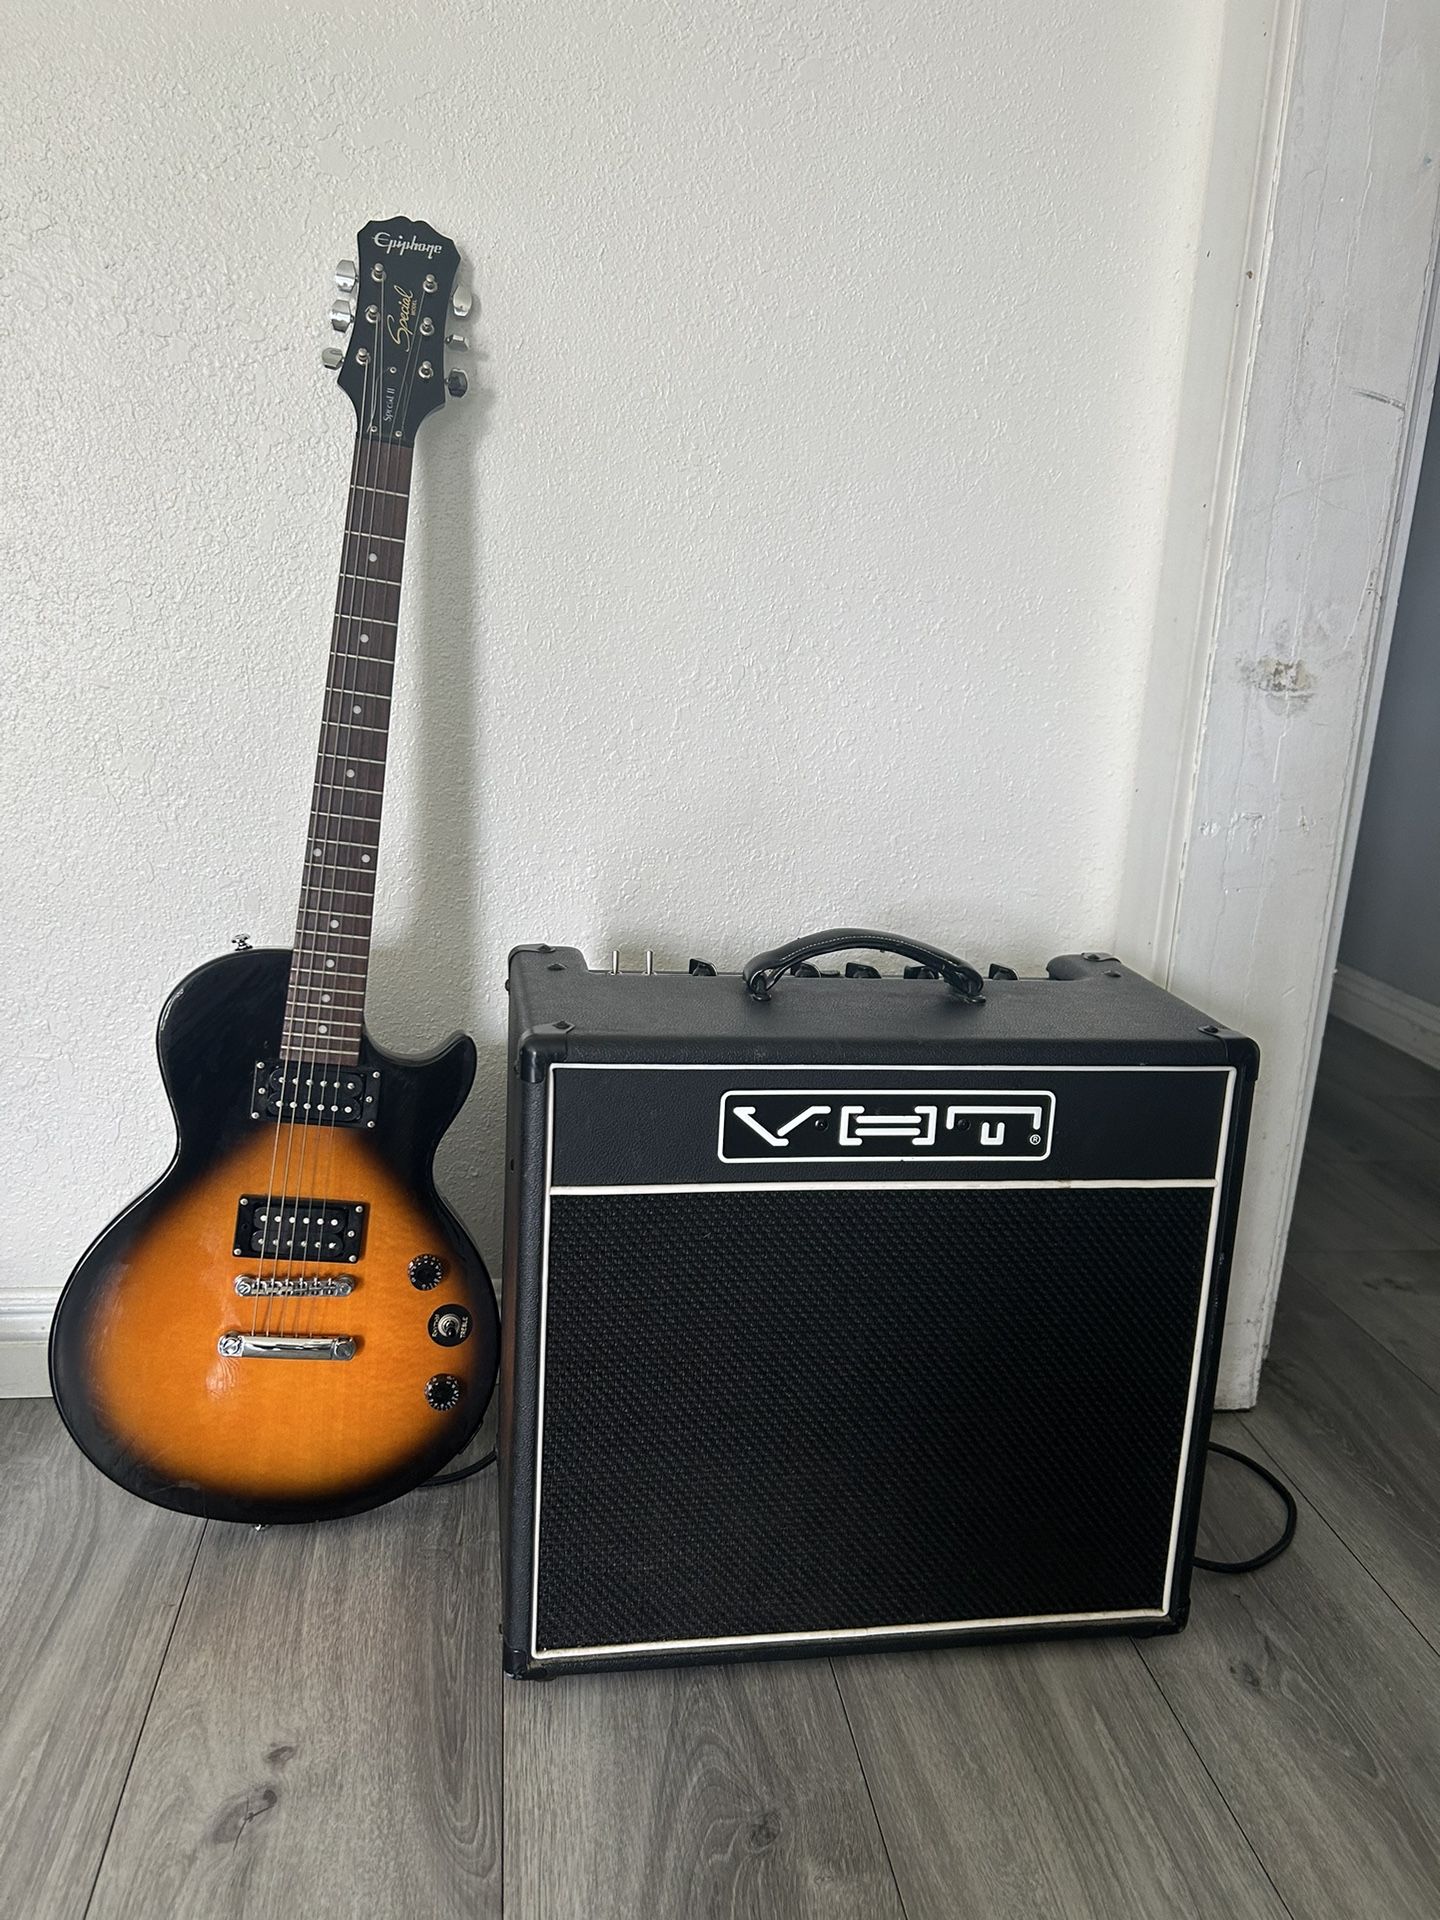 VHT Guitar Amp And Epiphone Guitar 